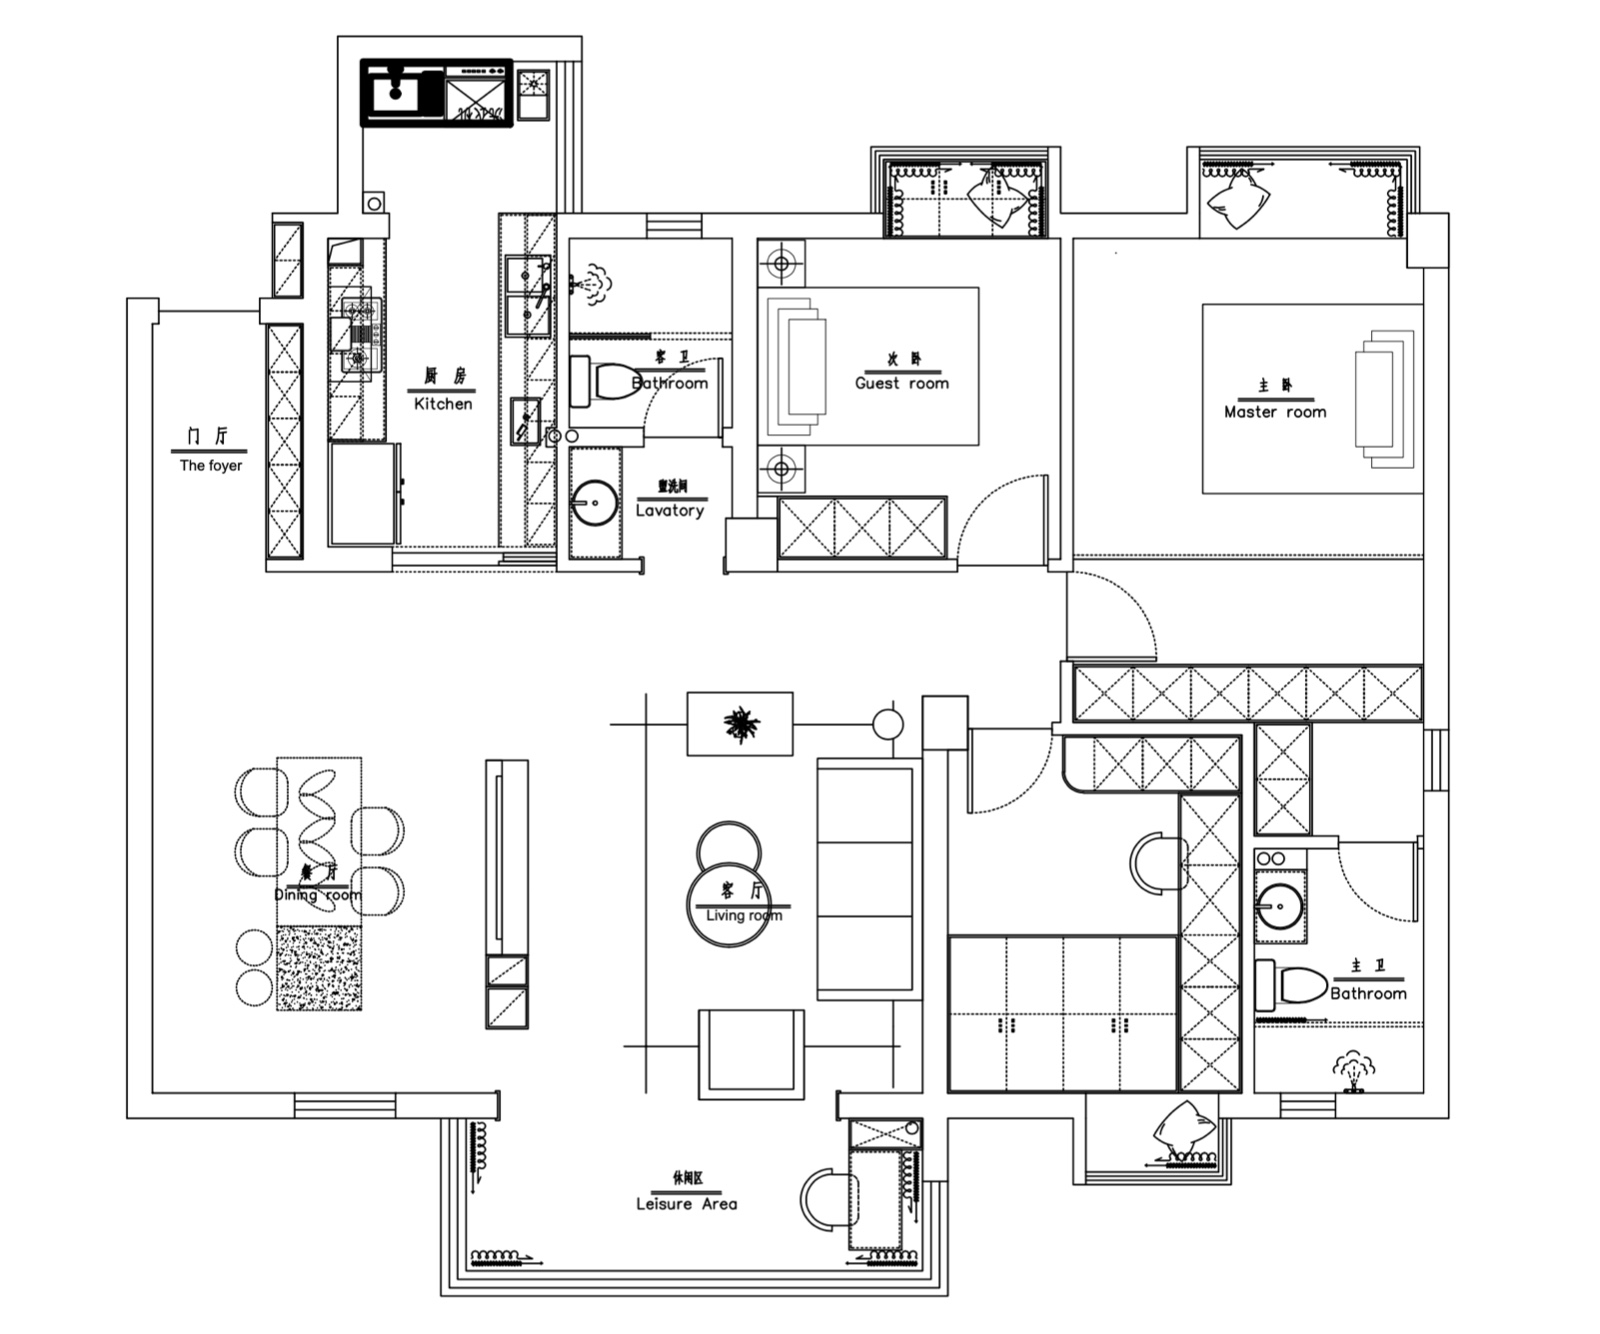 122混搭三房装修效果图,温馨家园-混搭极简装修案例效果图-美广网(图1)